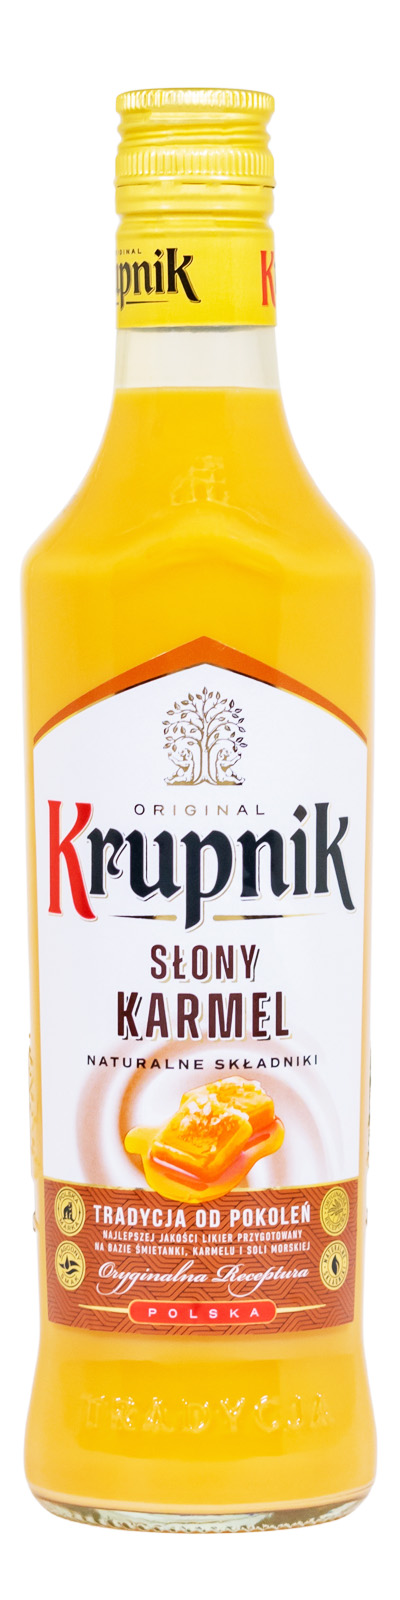 Krupnik Slony Karmel Salziges Karamell - 0,5L 16% vol